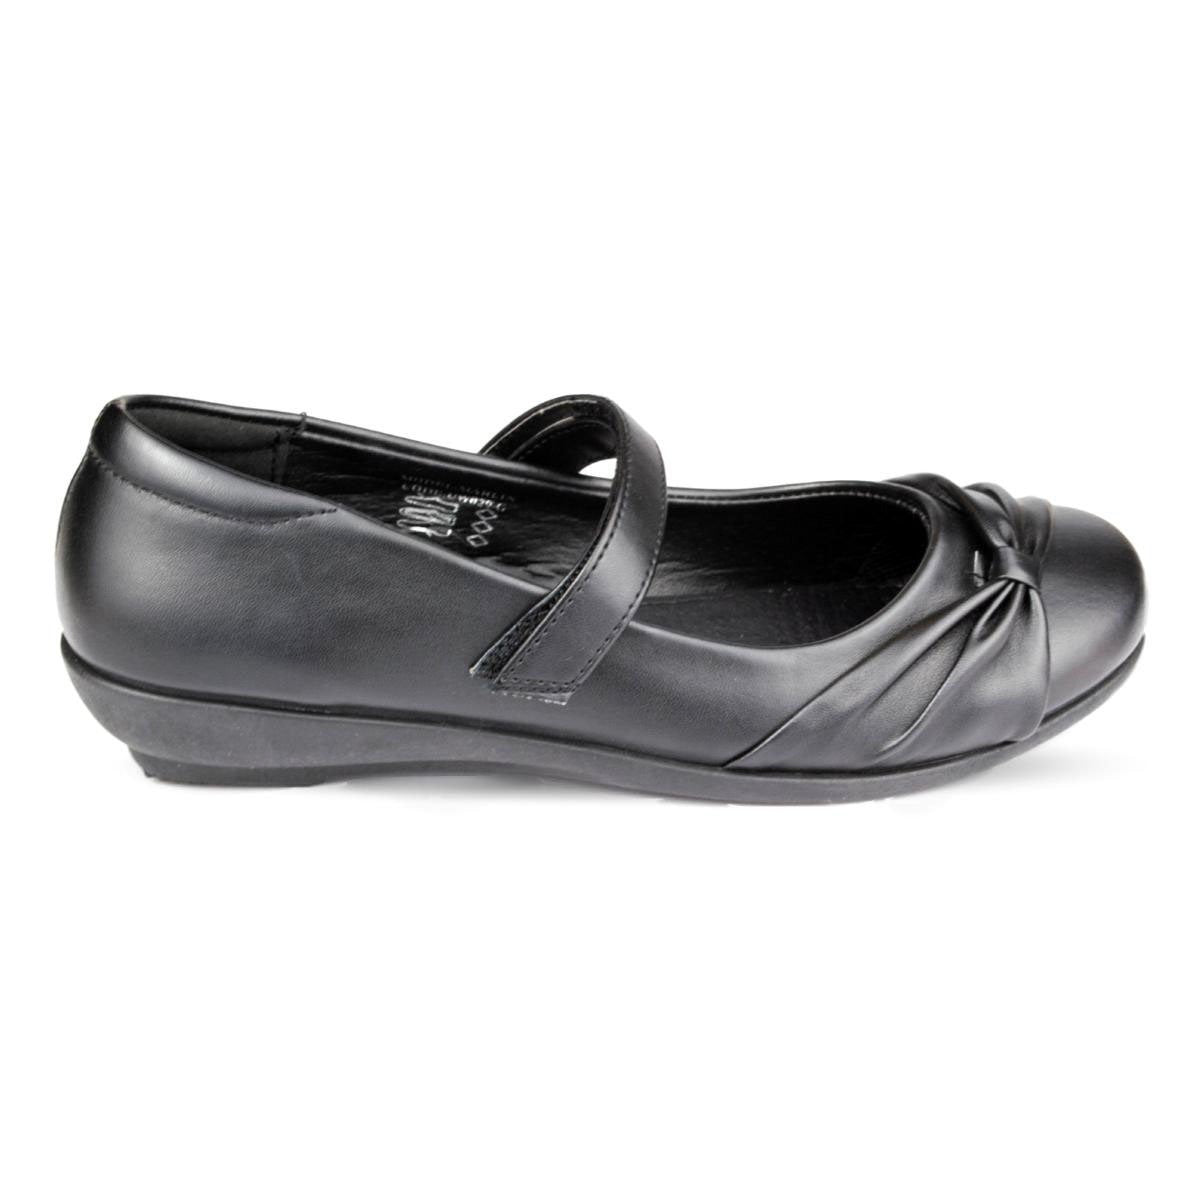 Girls Black School Shoe Fasten Strap - Watney Shoes 